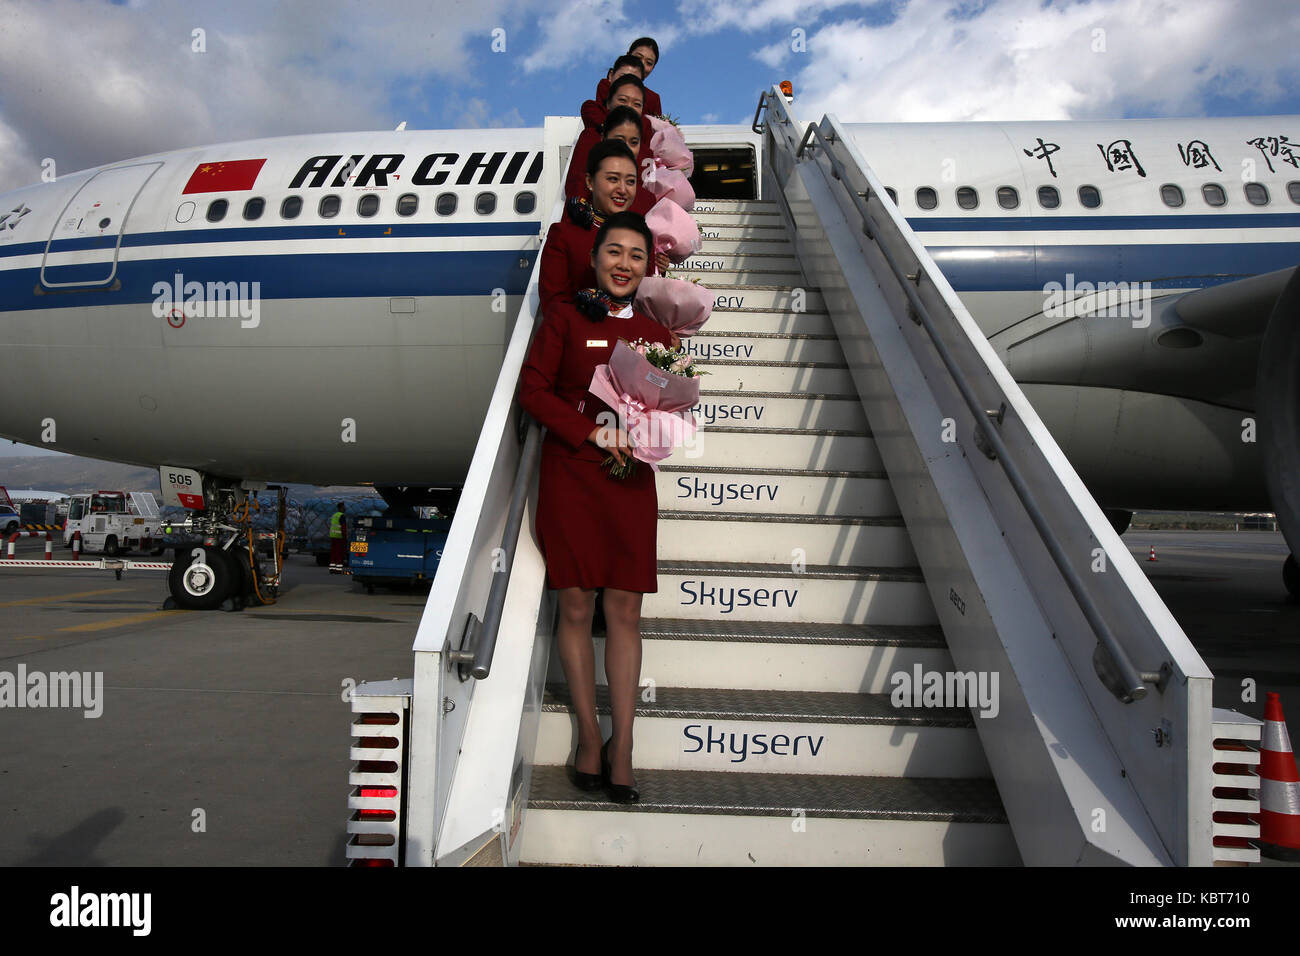 Athènes, Grèce. 30Th sep 2017. hôtesses de Airbus A330-200 d'air china holding bouquets de poser dans l'escalier après l'atterrissage à l'aéroport international d'Athènes, à Athènes, en Grèce, sur sept. 30, 2017. d'un Airbus A330-200 d'Air China a atterri à l'aéroport international d'Athènes (AIA) le samedi matin, inaugurant le premier vol direct d'athènes à Pékin. crédit : marios lolos/Xinhua/Alamy live news Banque D'Images